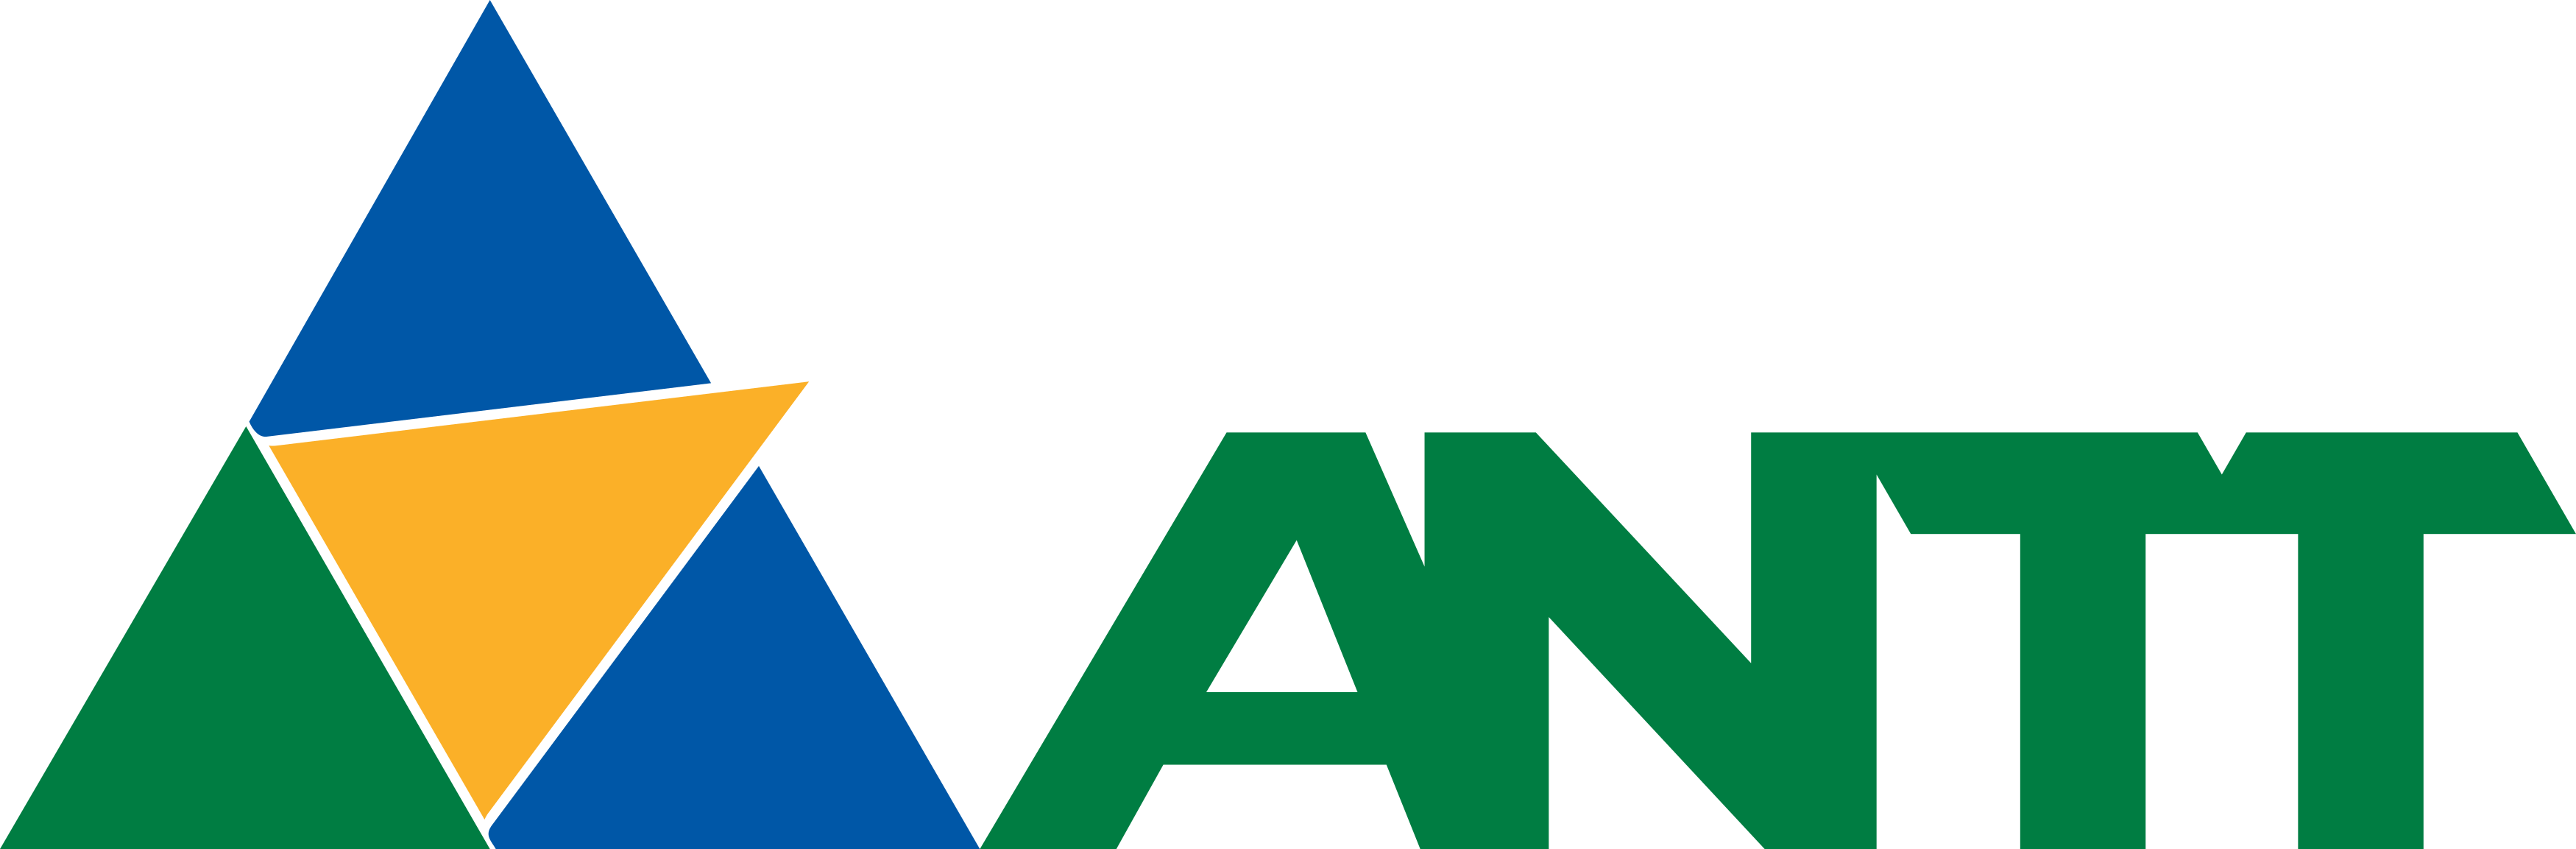 9_19244_eml_antt-logo